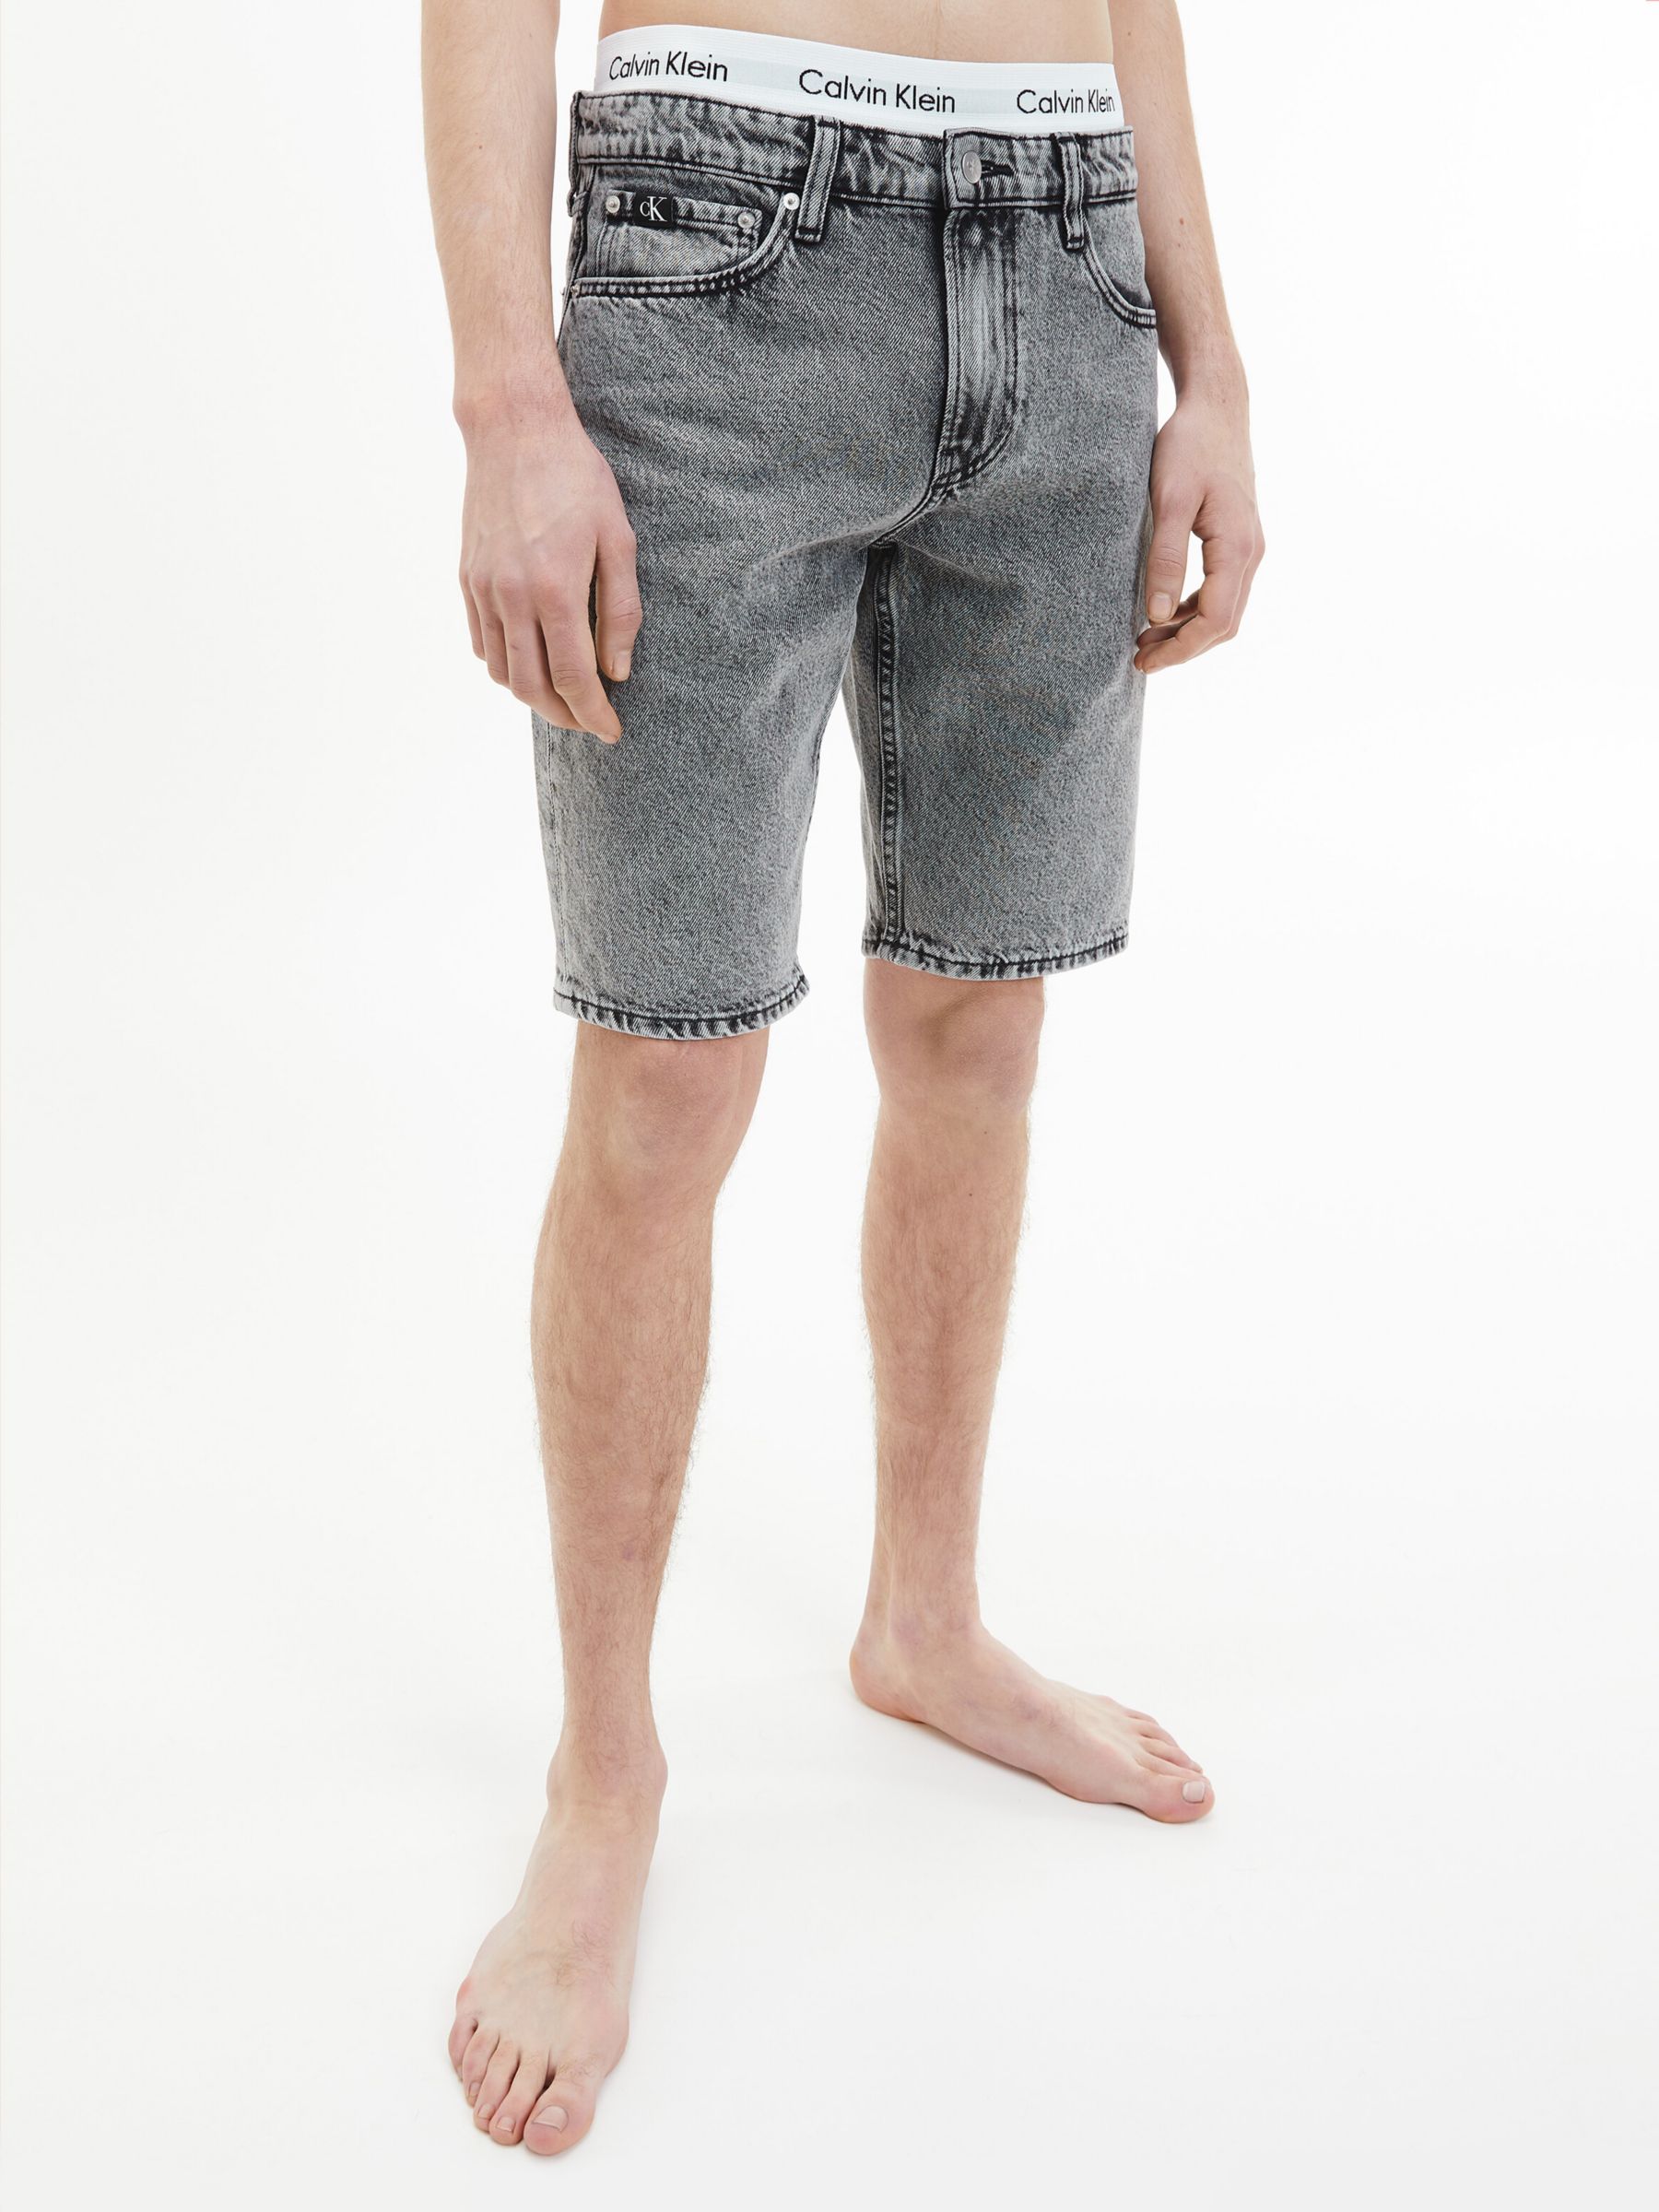 Calvin Klein Denim Shorts, Grey